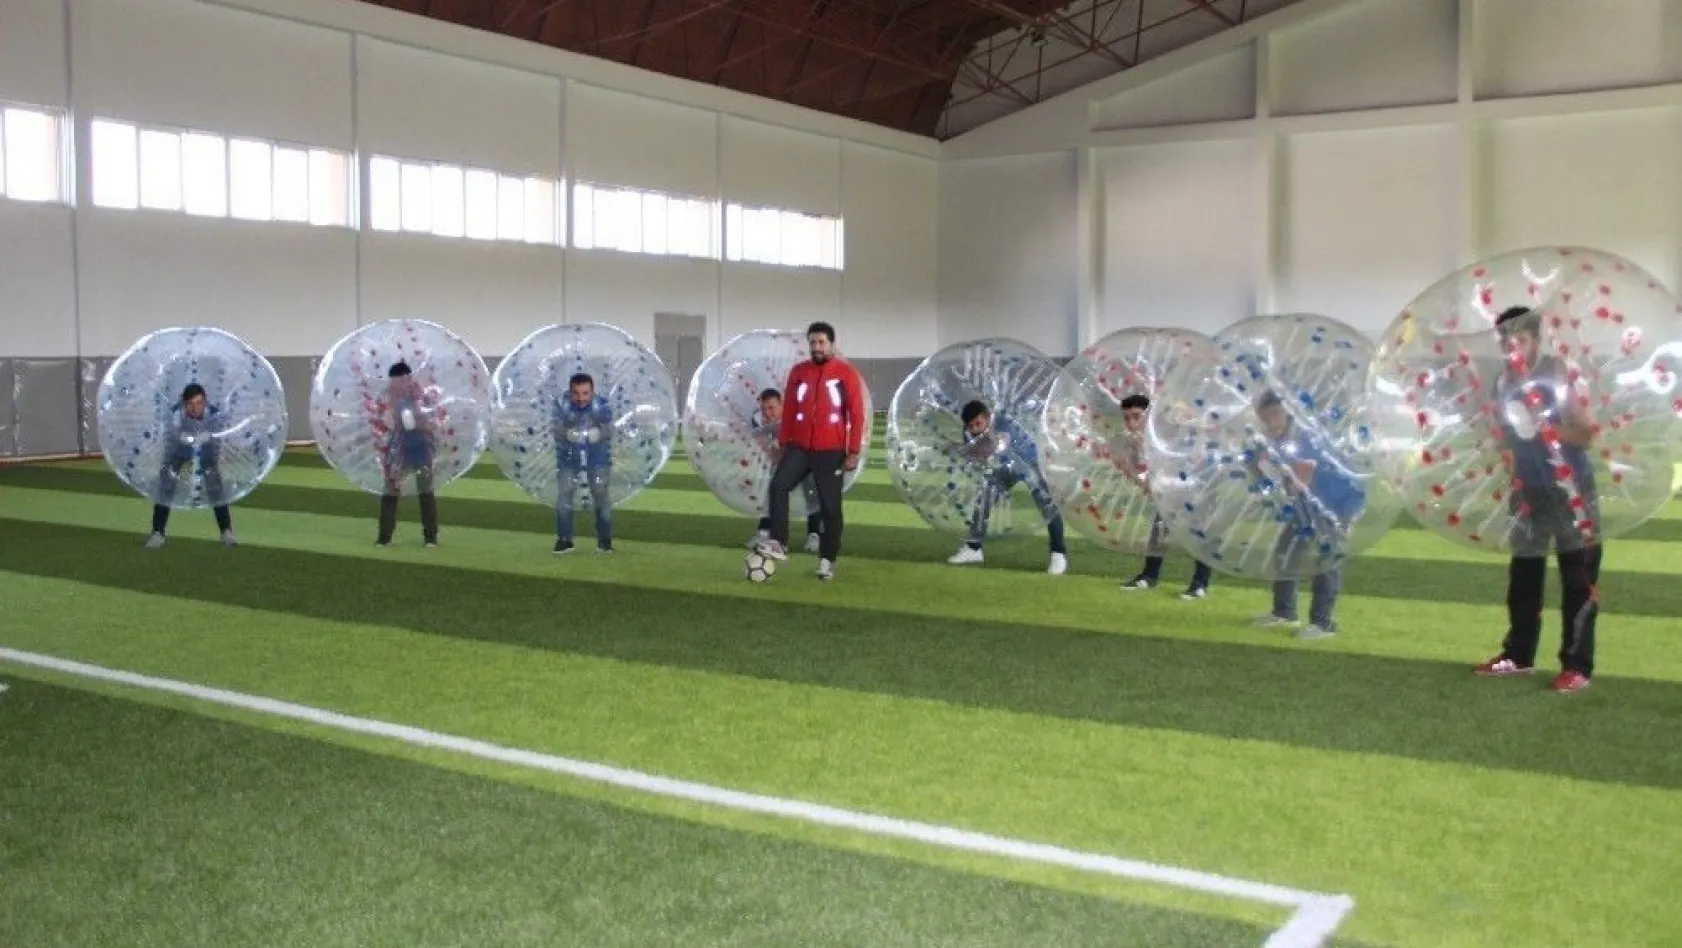 Erzurumlular balon futbolu ile stres atıyor
